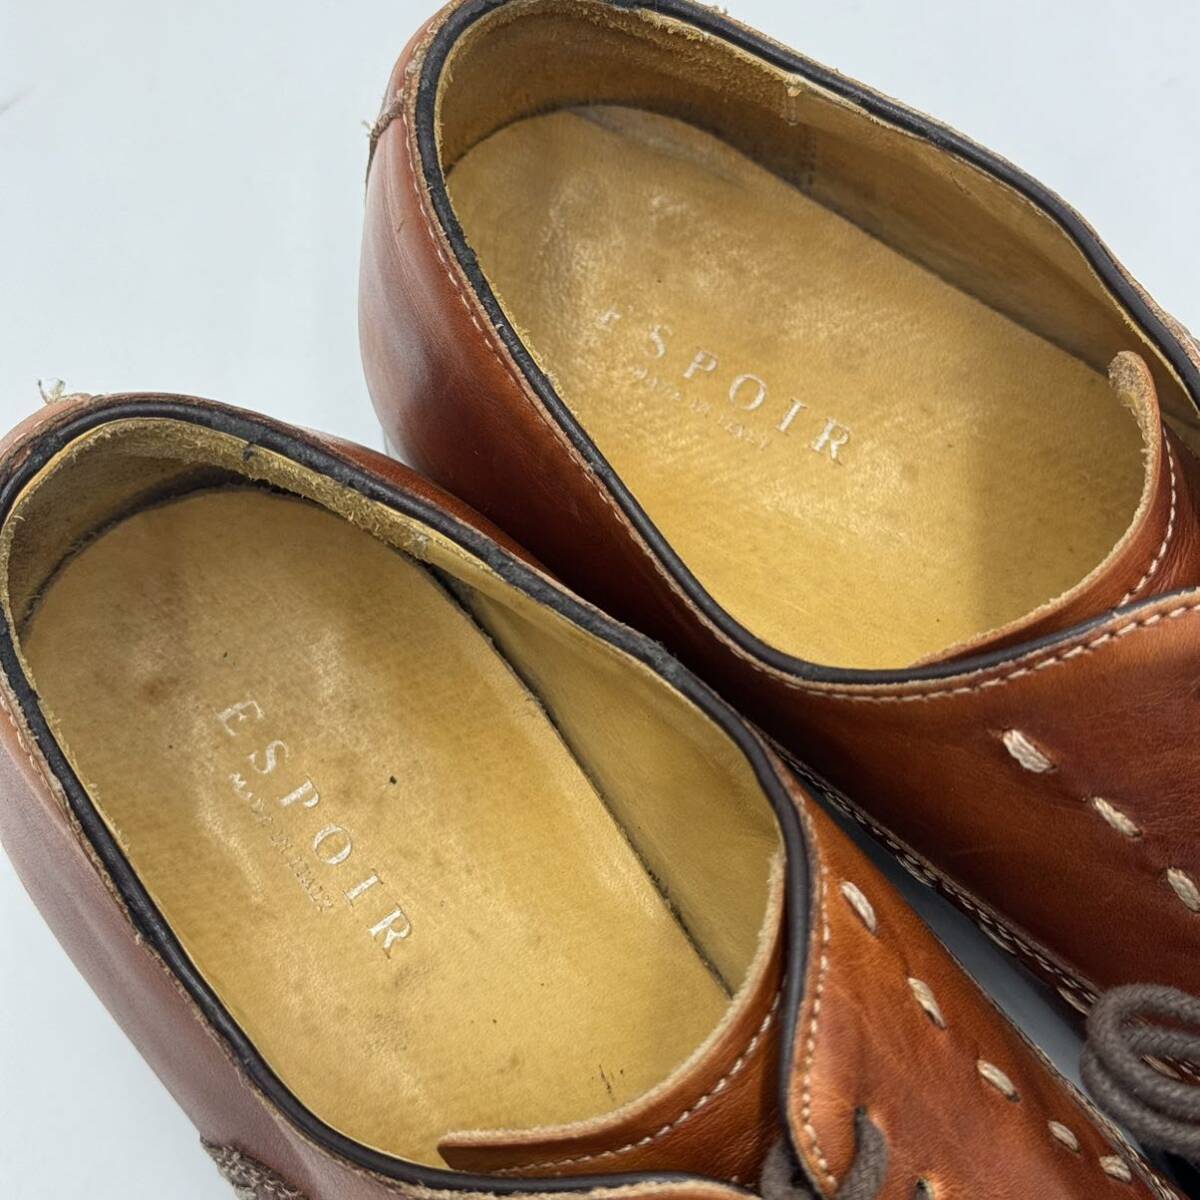 G☆ステッチデザイン 'イタリア製' ESPOIR エスポアール 本革 レザー ビジネスシューズ 革靴 ストレートチップ ドレスシューズ 紳士靴 40.5の画像8